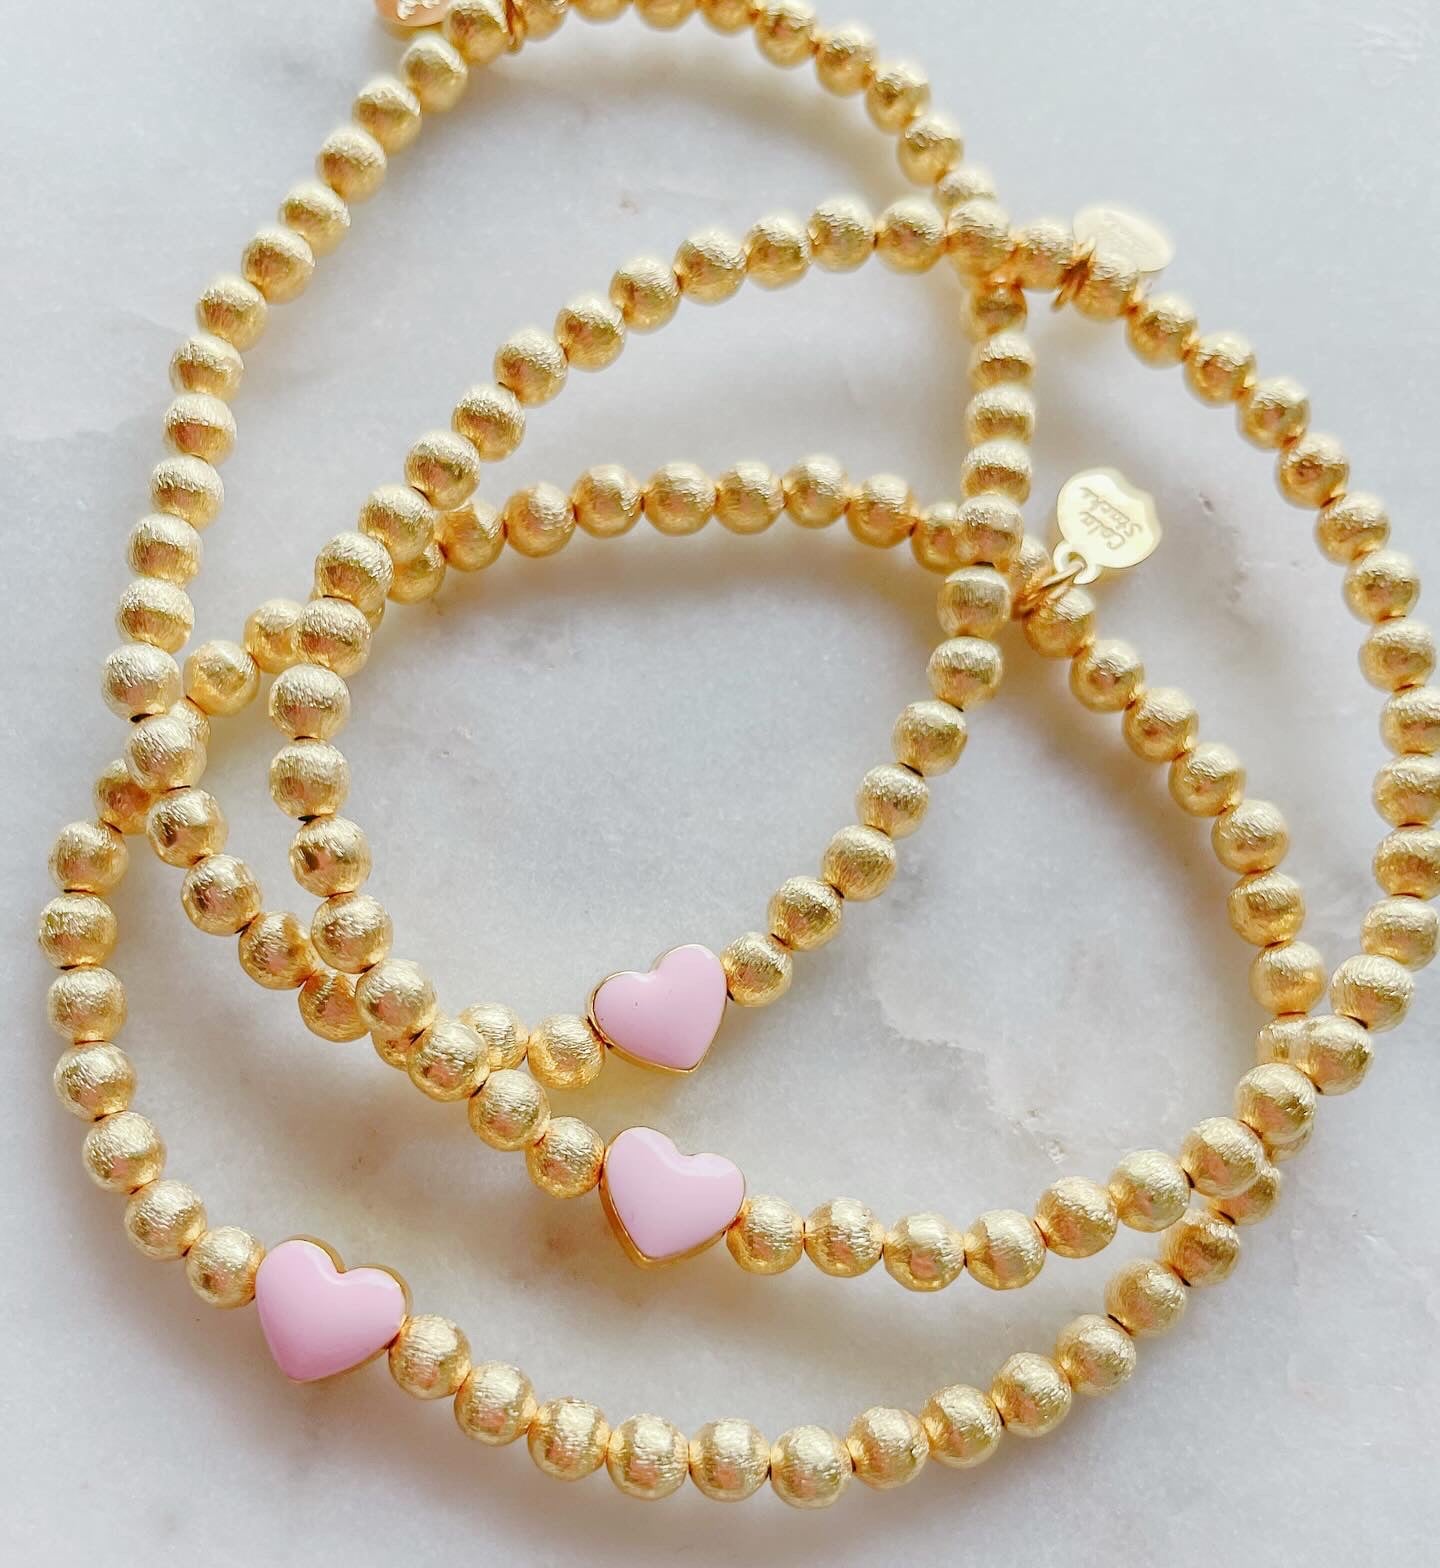 Simple Heart Bracelet